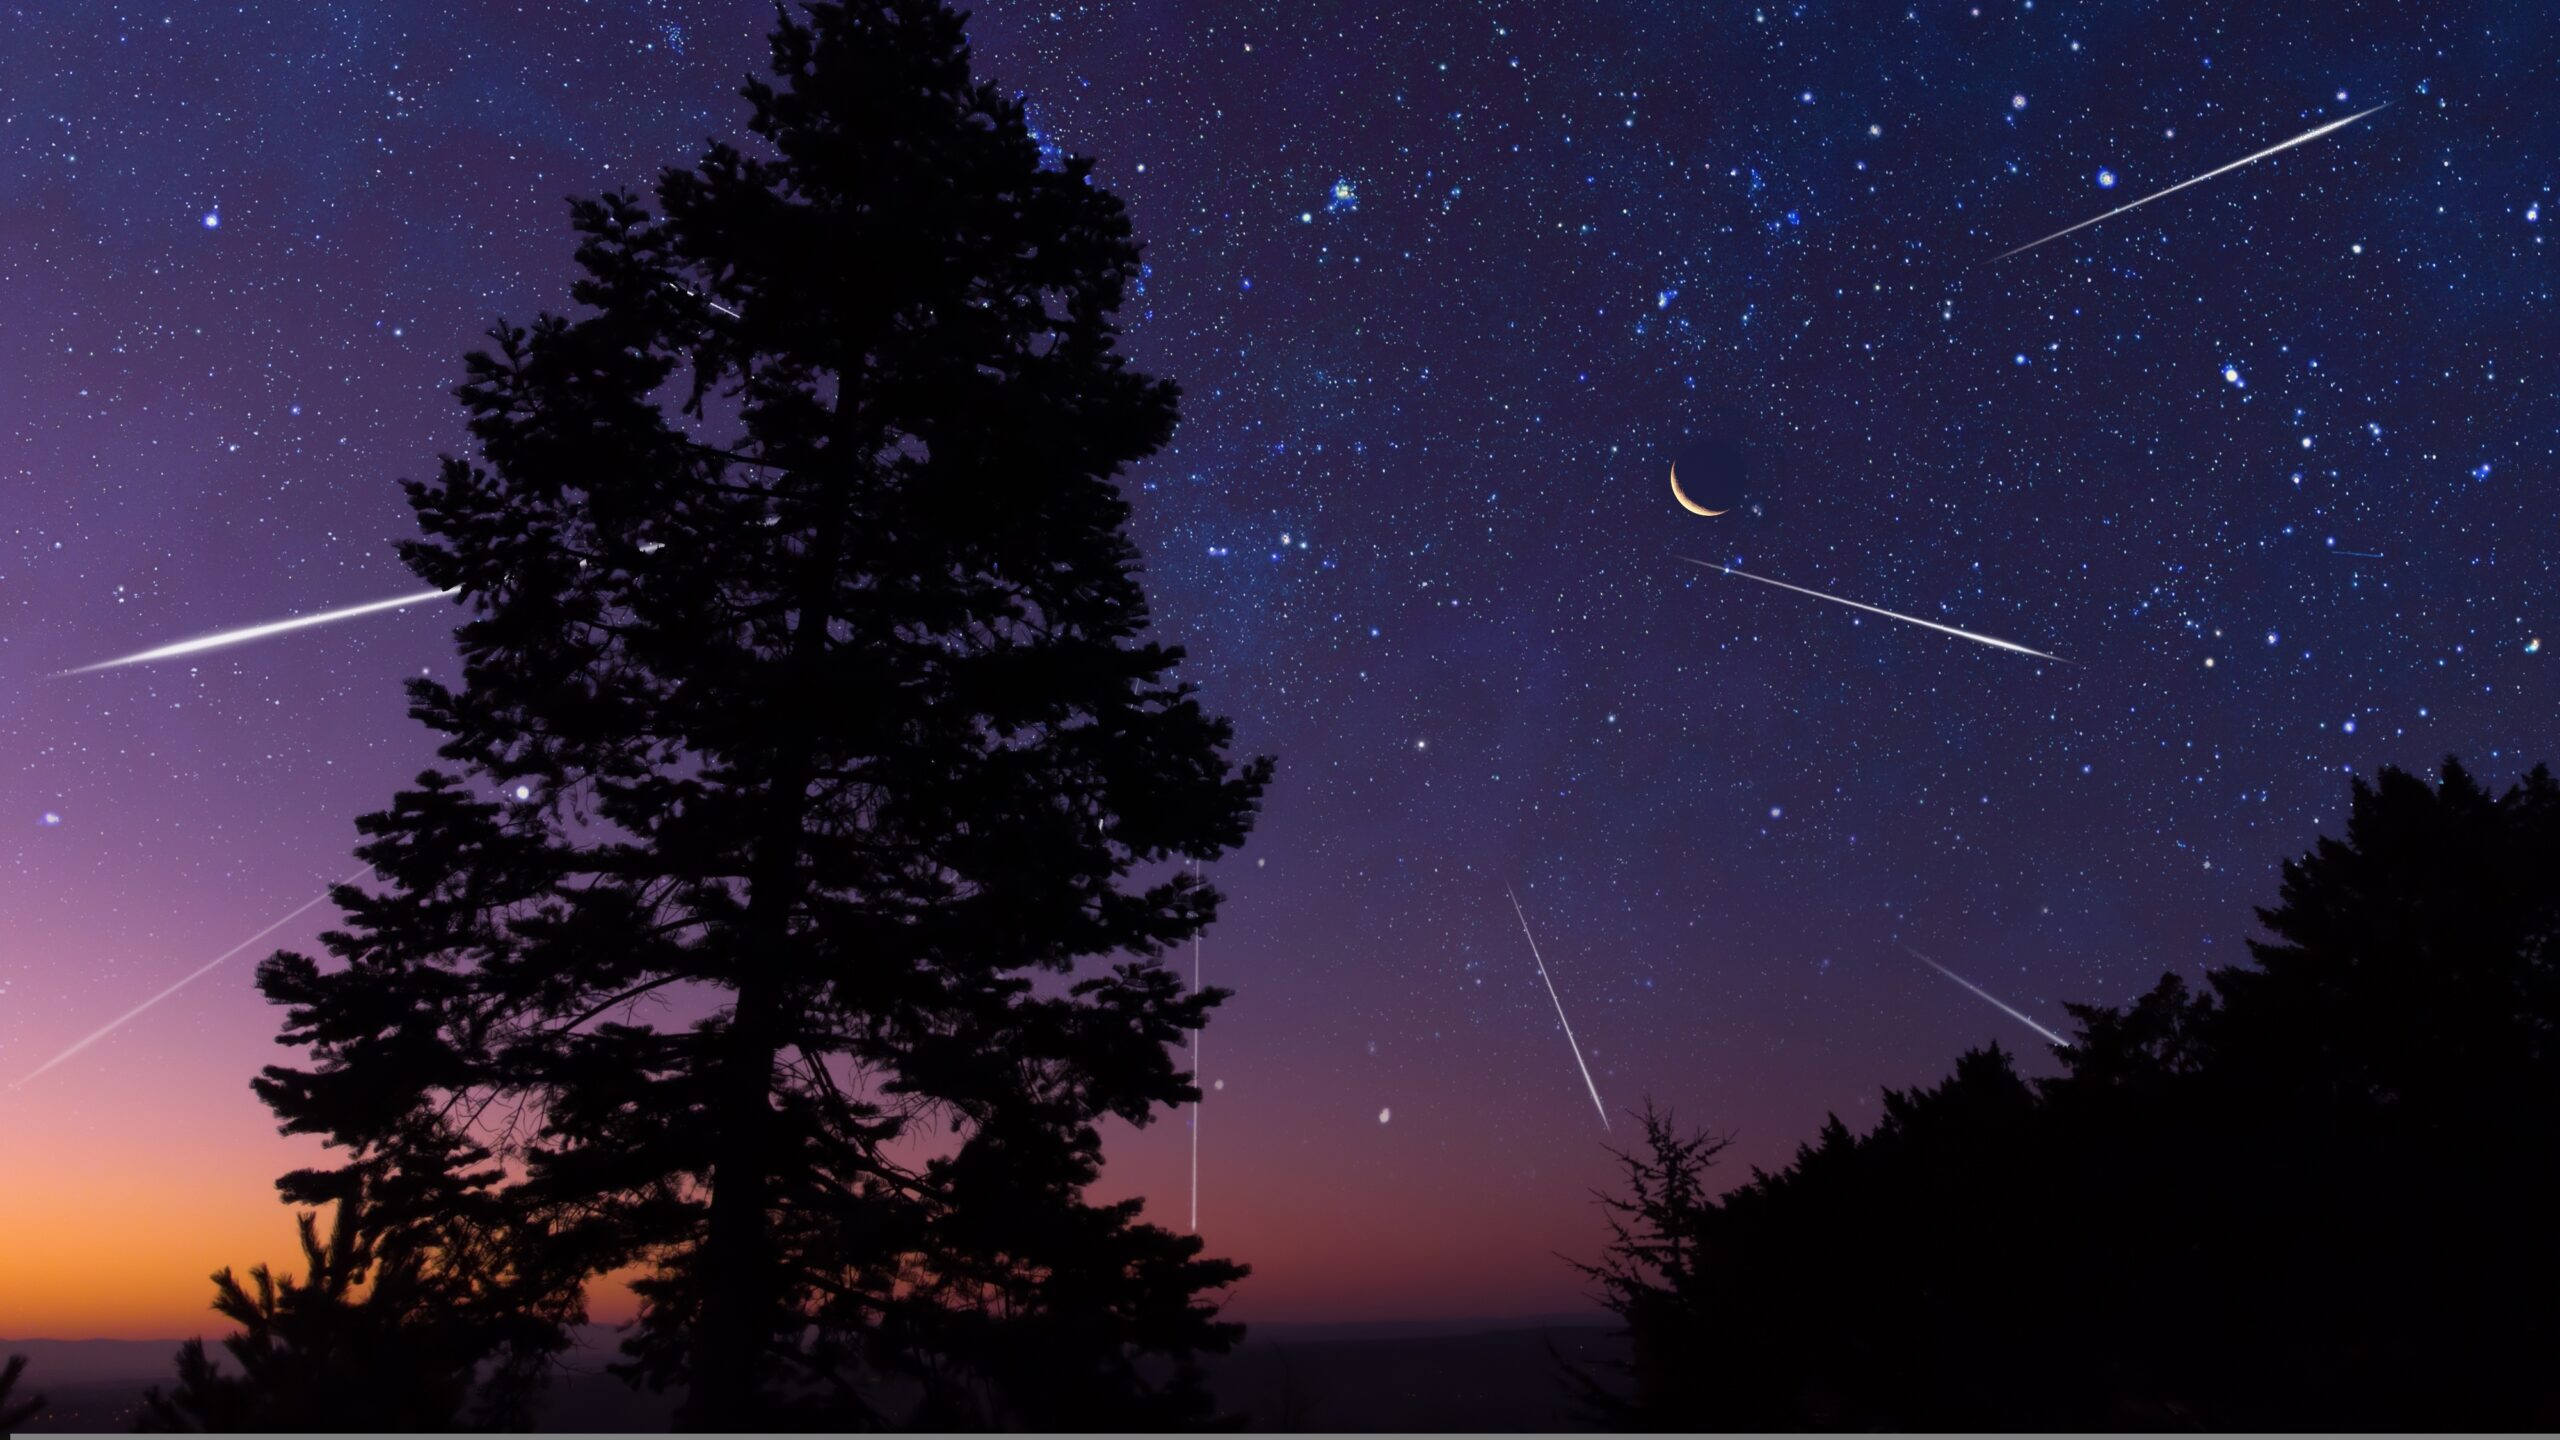 o-ploaie-de-stele-cazatoare-spectaculoasa-va-avea-loc-chiar-de-paste.-meteoritii-provin-din-cometa-halley